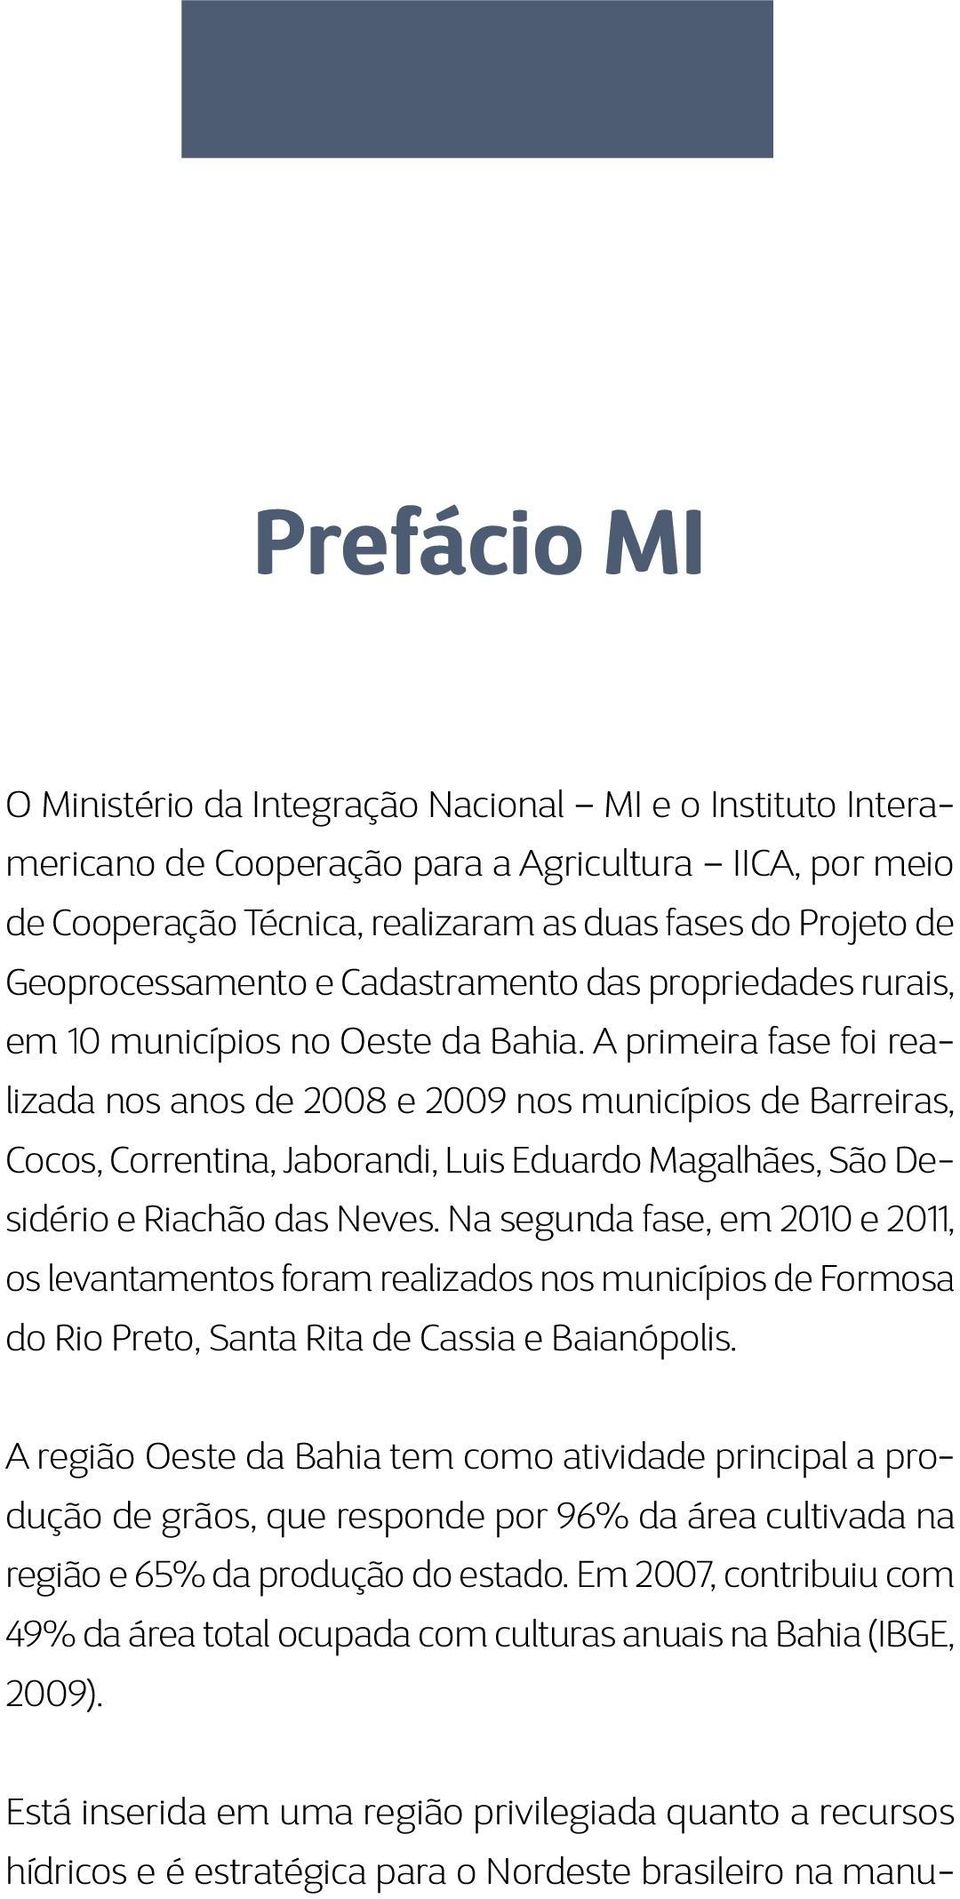 A primeira fase foi realizada nos anos de 2008 e 2009 nos municípios de Barreiras, Cocos, Correntina, Jaborandi, Luis Eduardo Magalhães, São Desidério e Riachão das Neves.